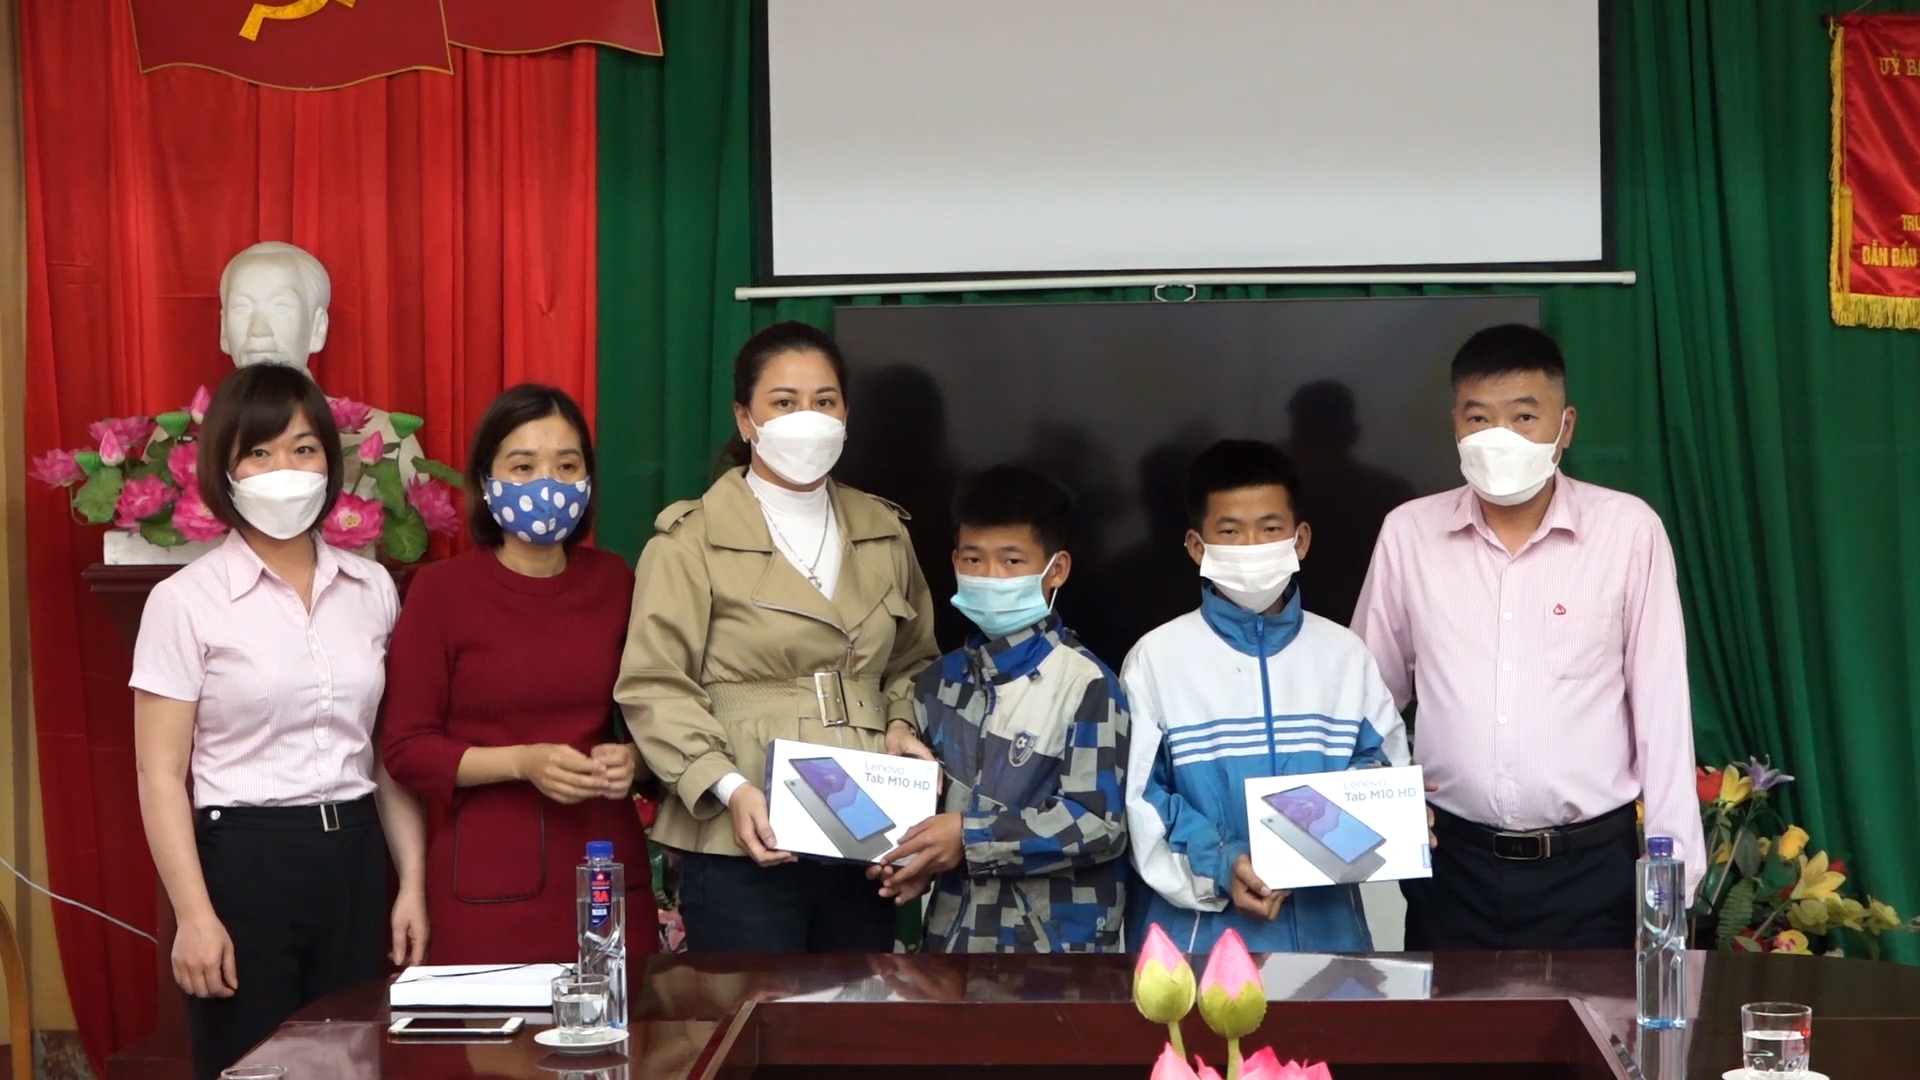 Ngân hàng CSXH tỉnh Hà Giang trao tặng máy tính bảng cho học sinh nghèo tại huyện Yên Minh